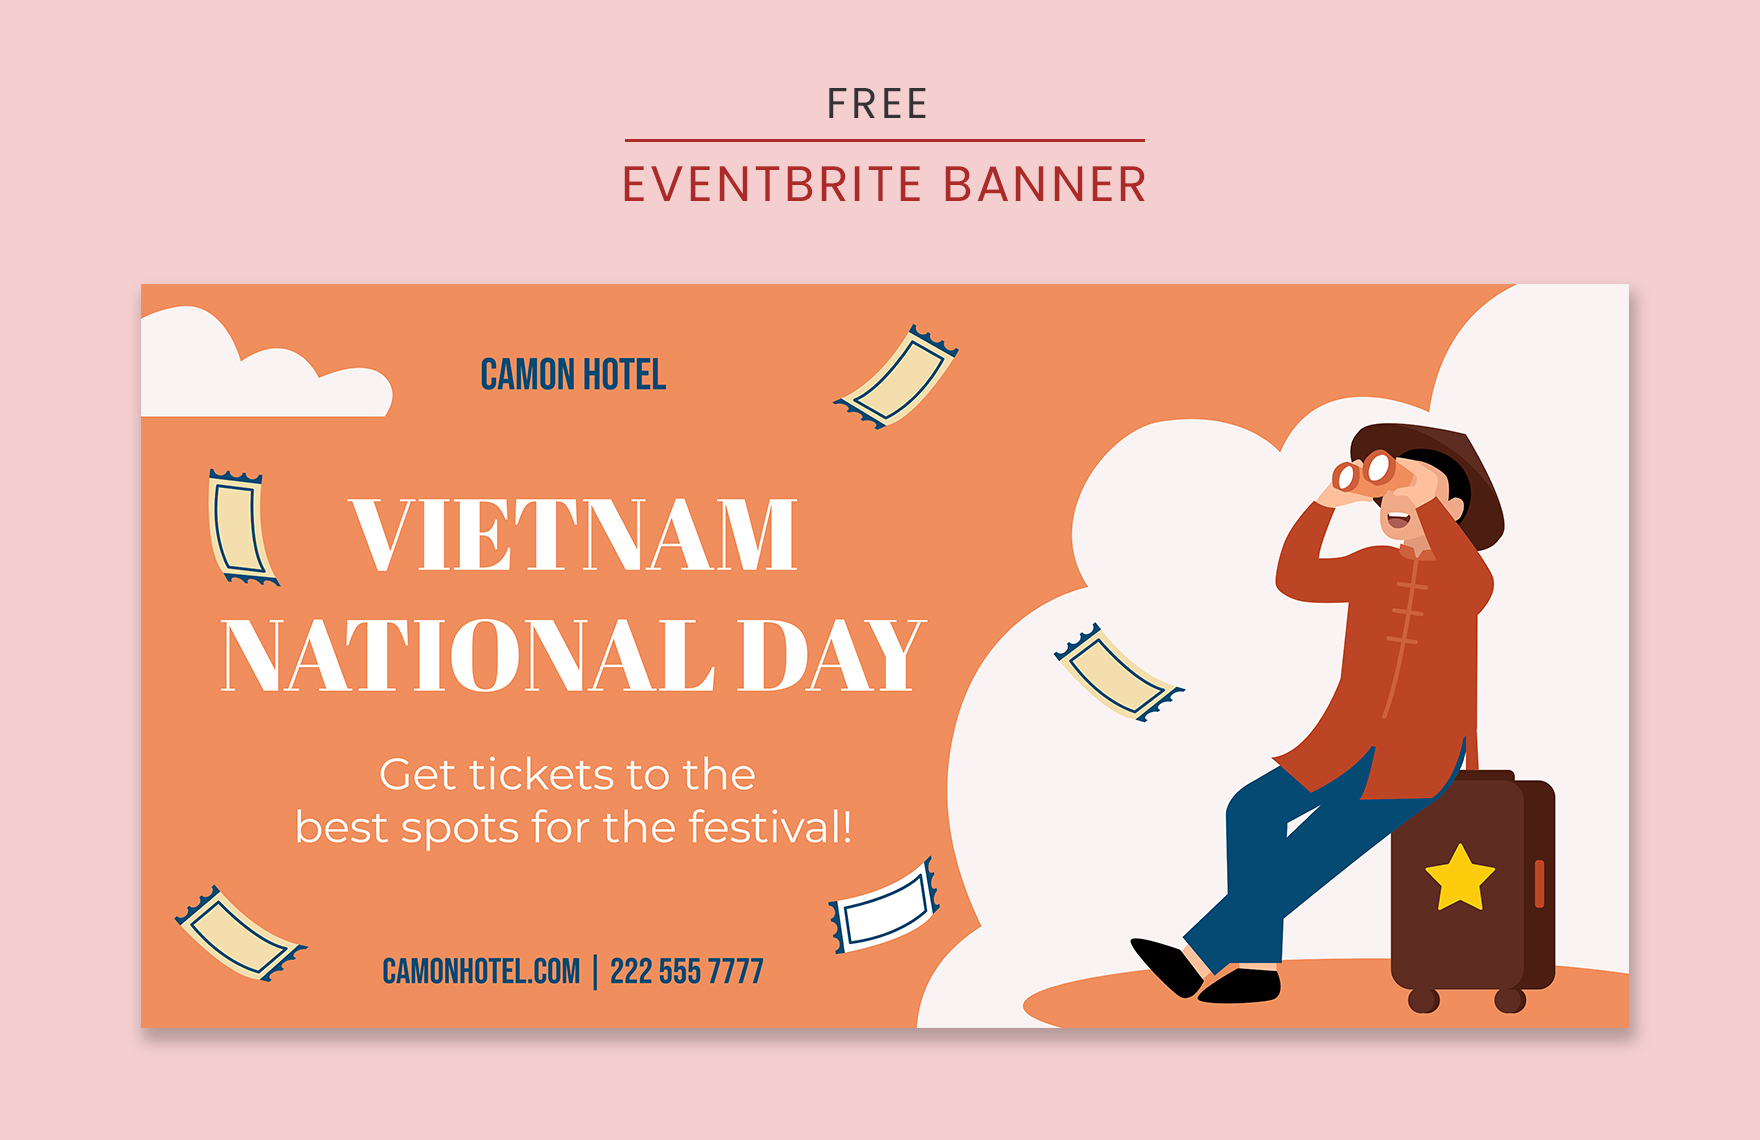 Vietnam National Day Eventbrite Banner